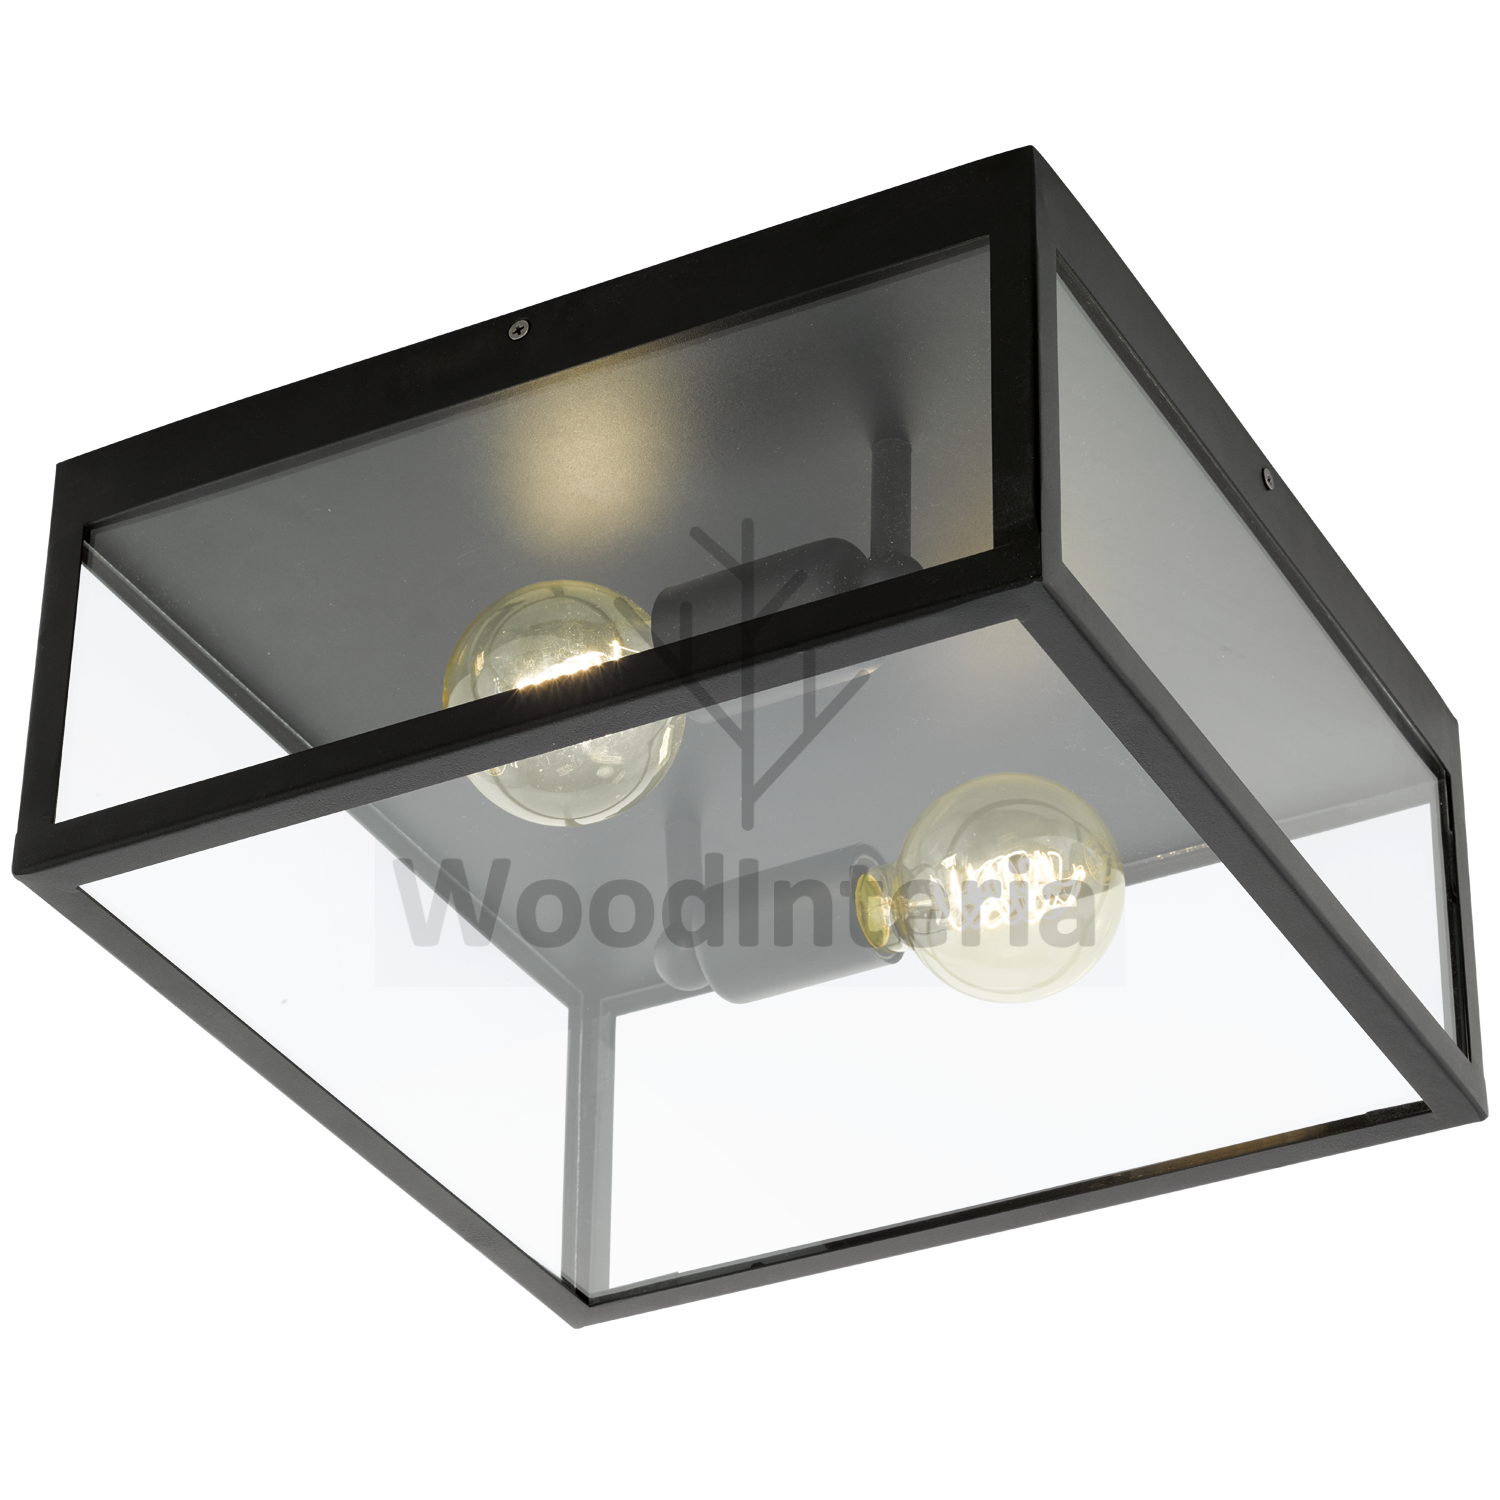 фото потолочный светильник transparent сube в скандинавском интерьере лофт эко | WoodInteria